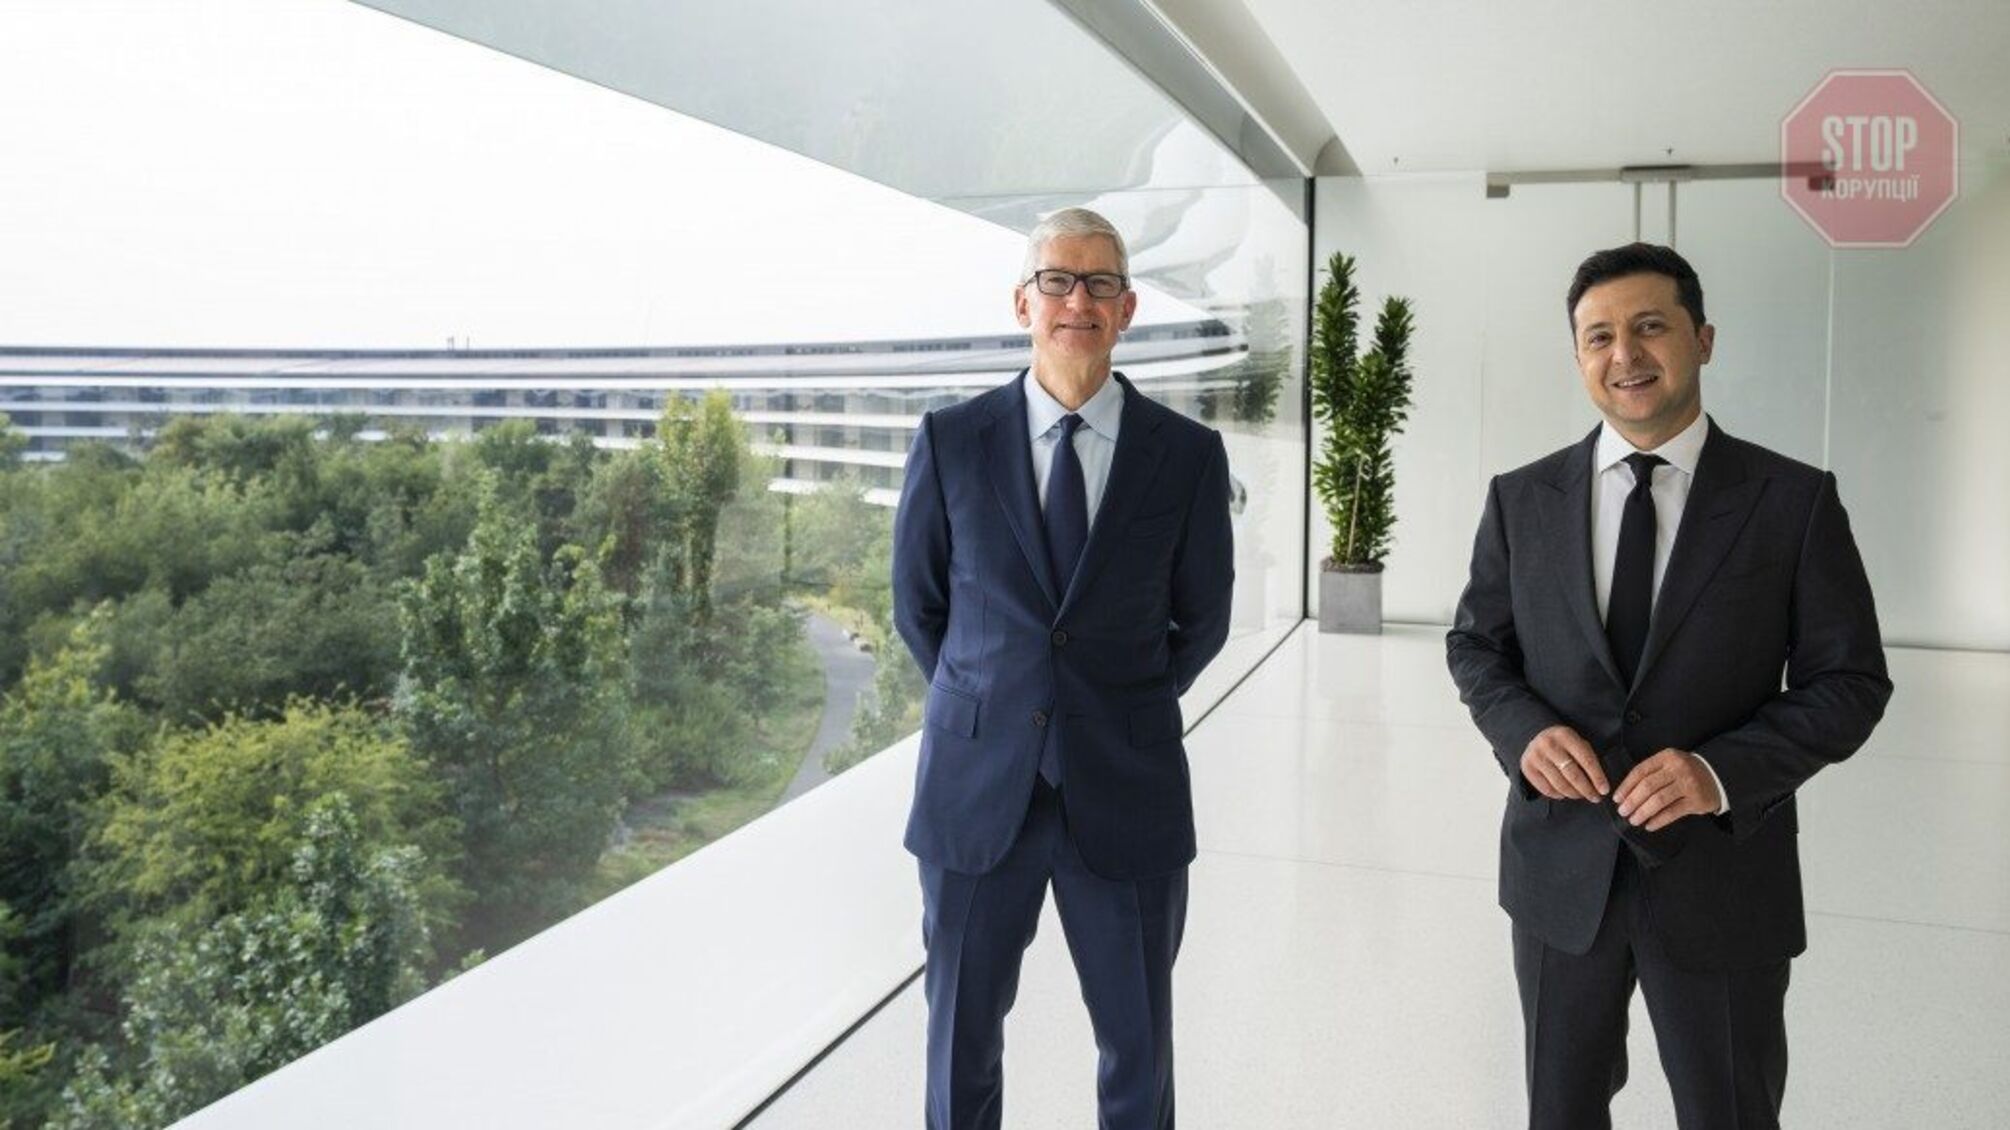 Зеленский встретился с генеральным директором Apple Тимом Куком